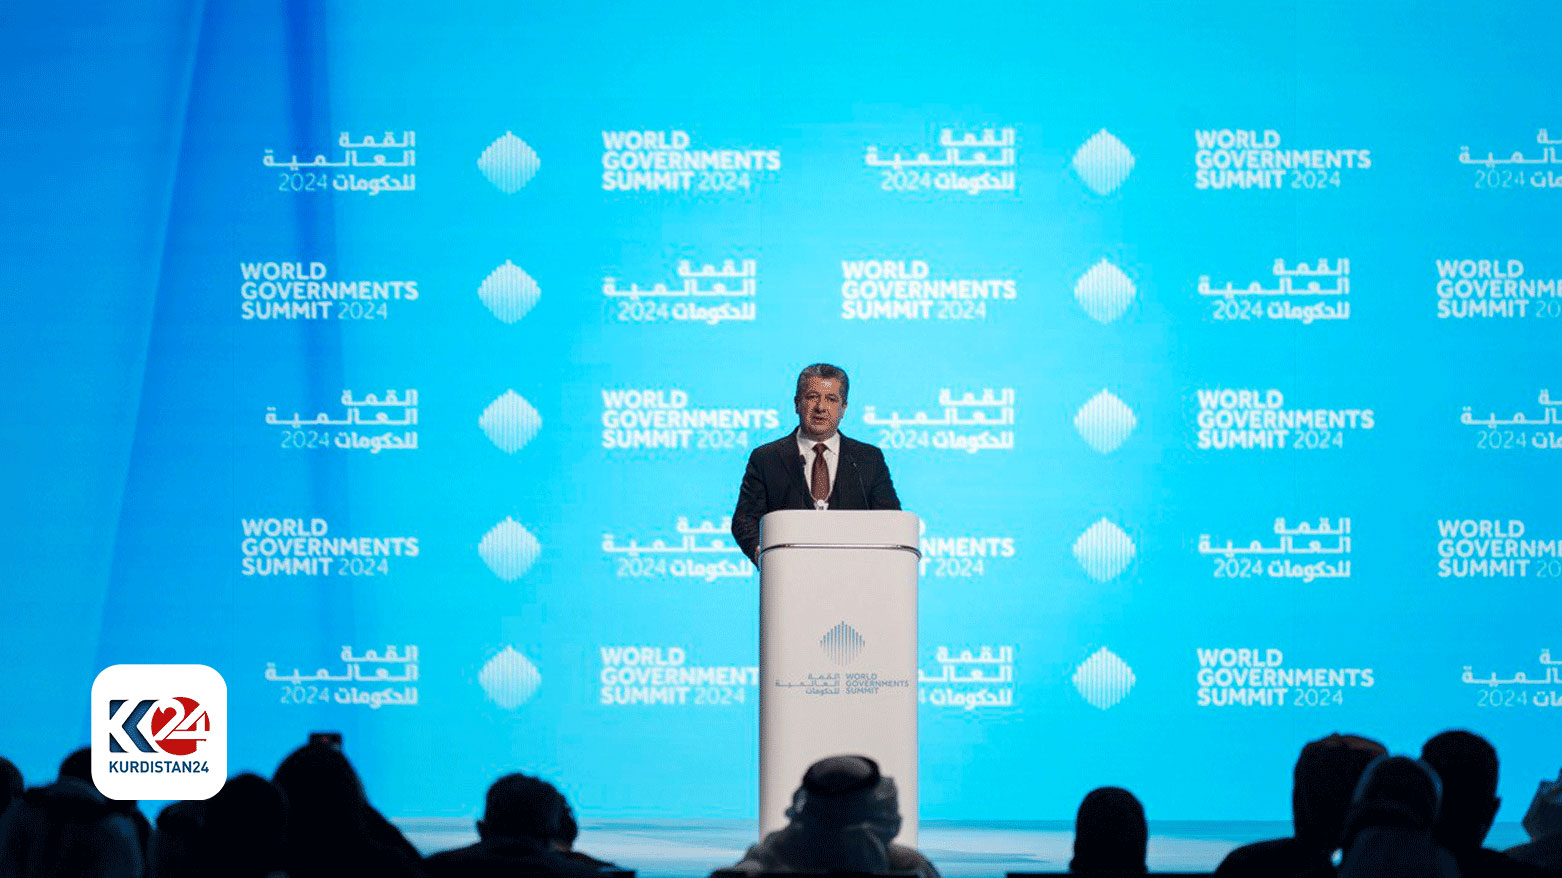 رئيس الوزراء أثناء إلقاء كلمته في قمة الحكومات العالمية بـــ دبي